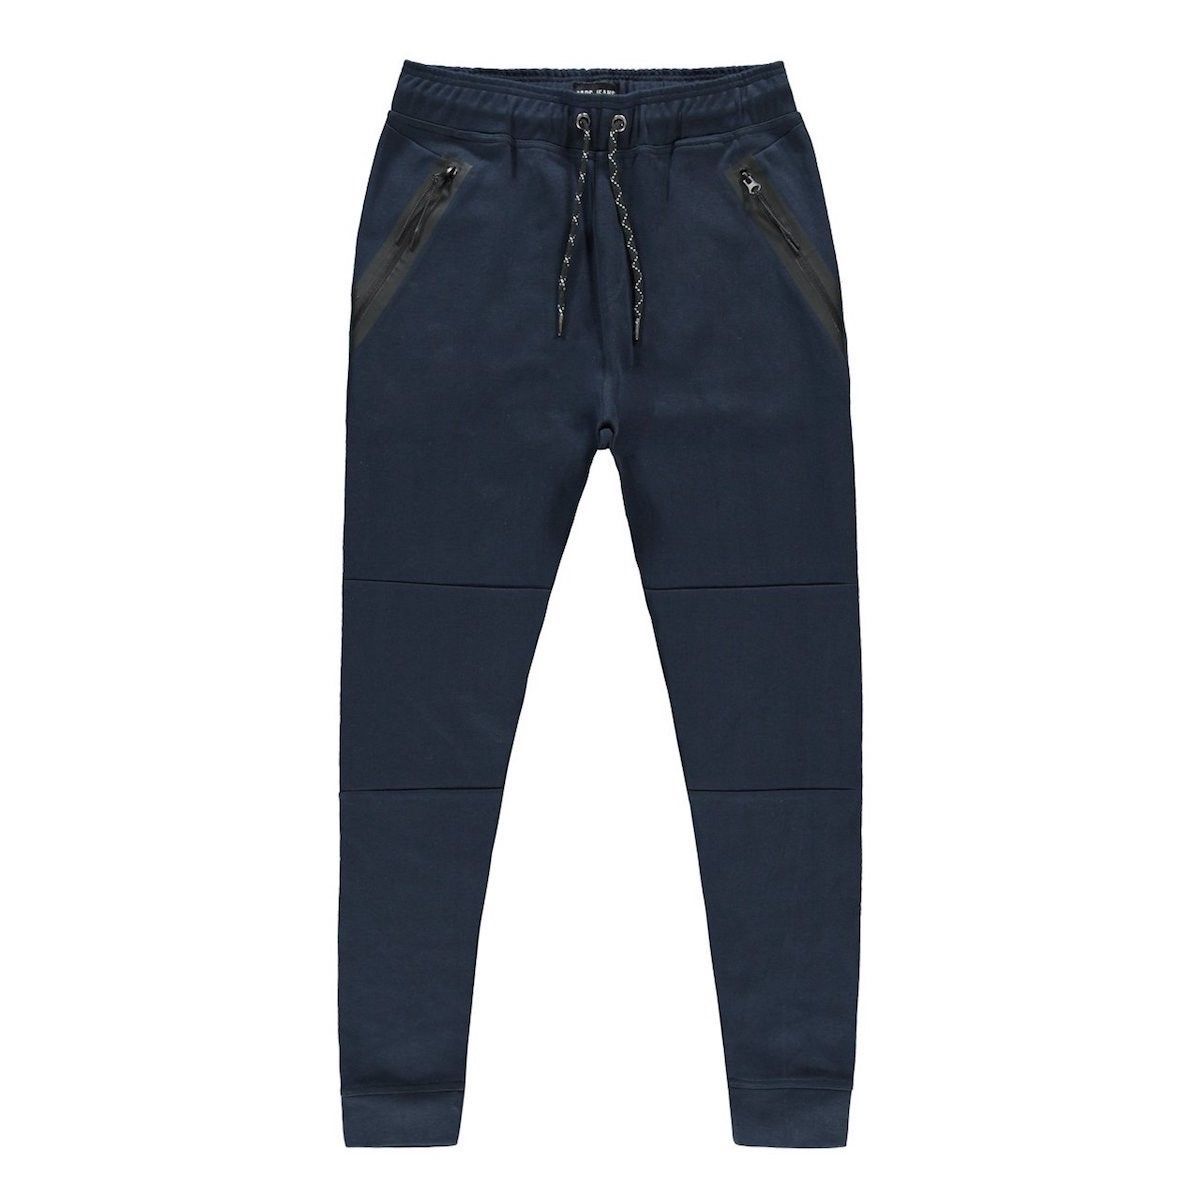 Cars jeans Pants Lax Jr. 12 navy 00103628-EKA26008400000003